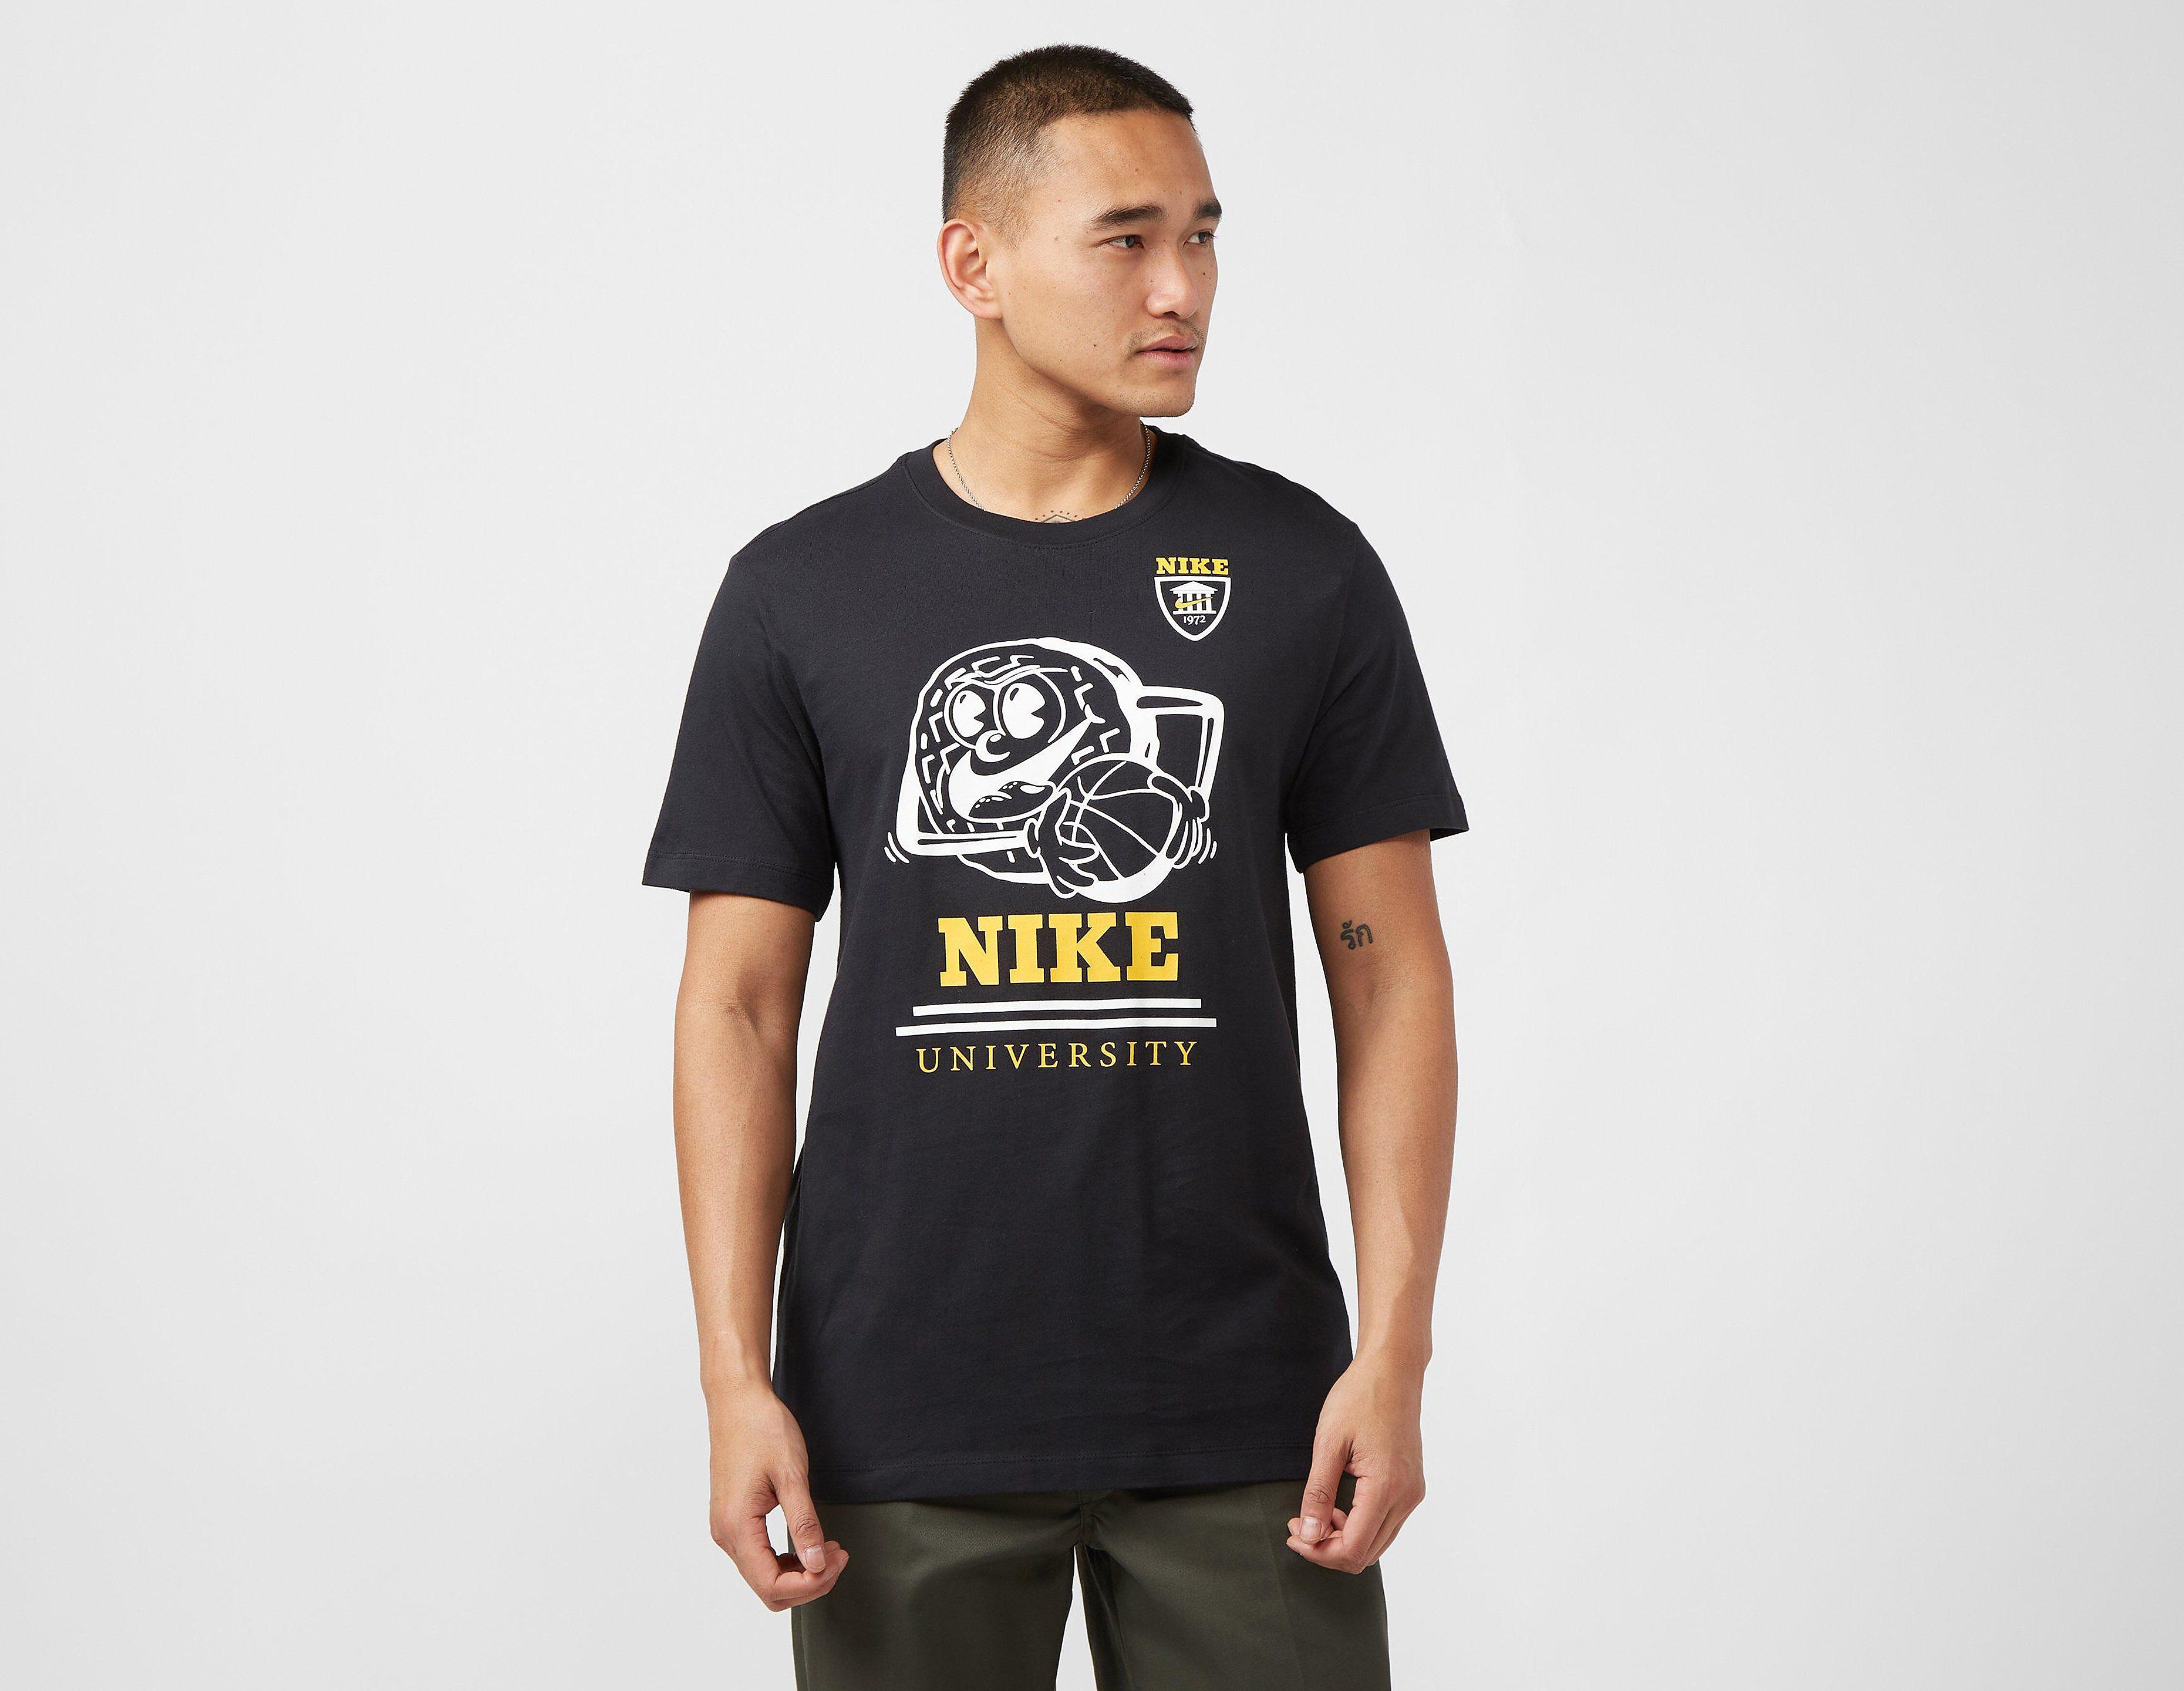 Nike University T-Shirt, Black